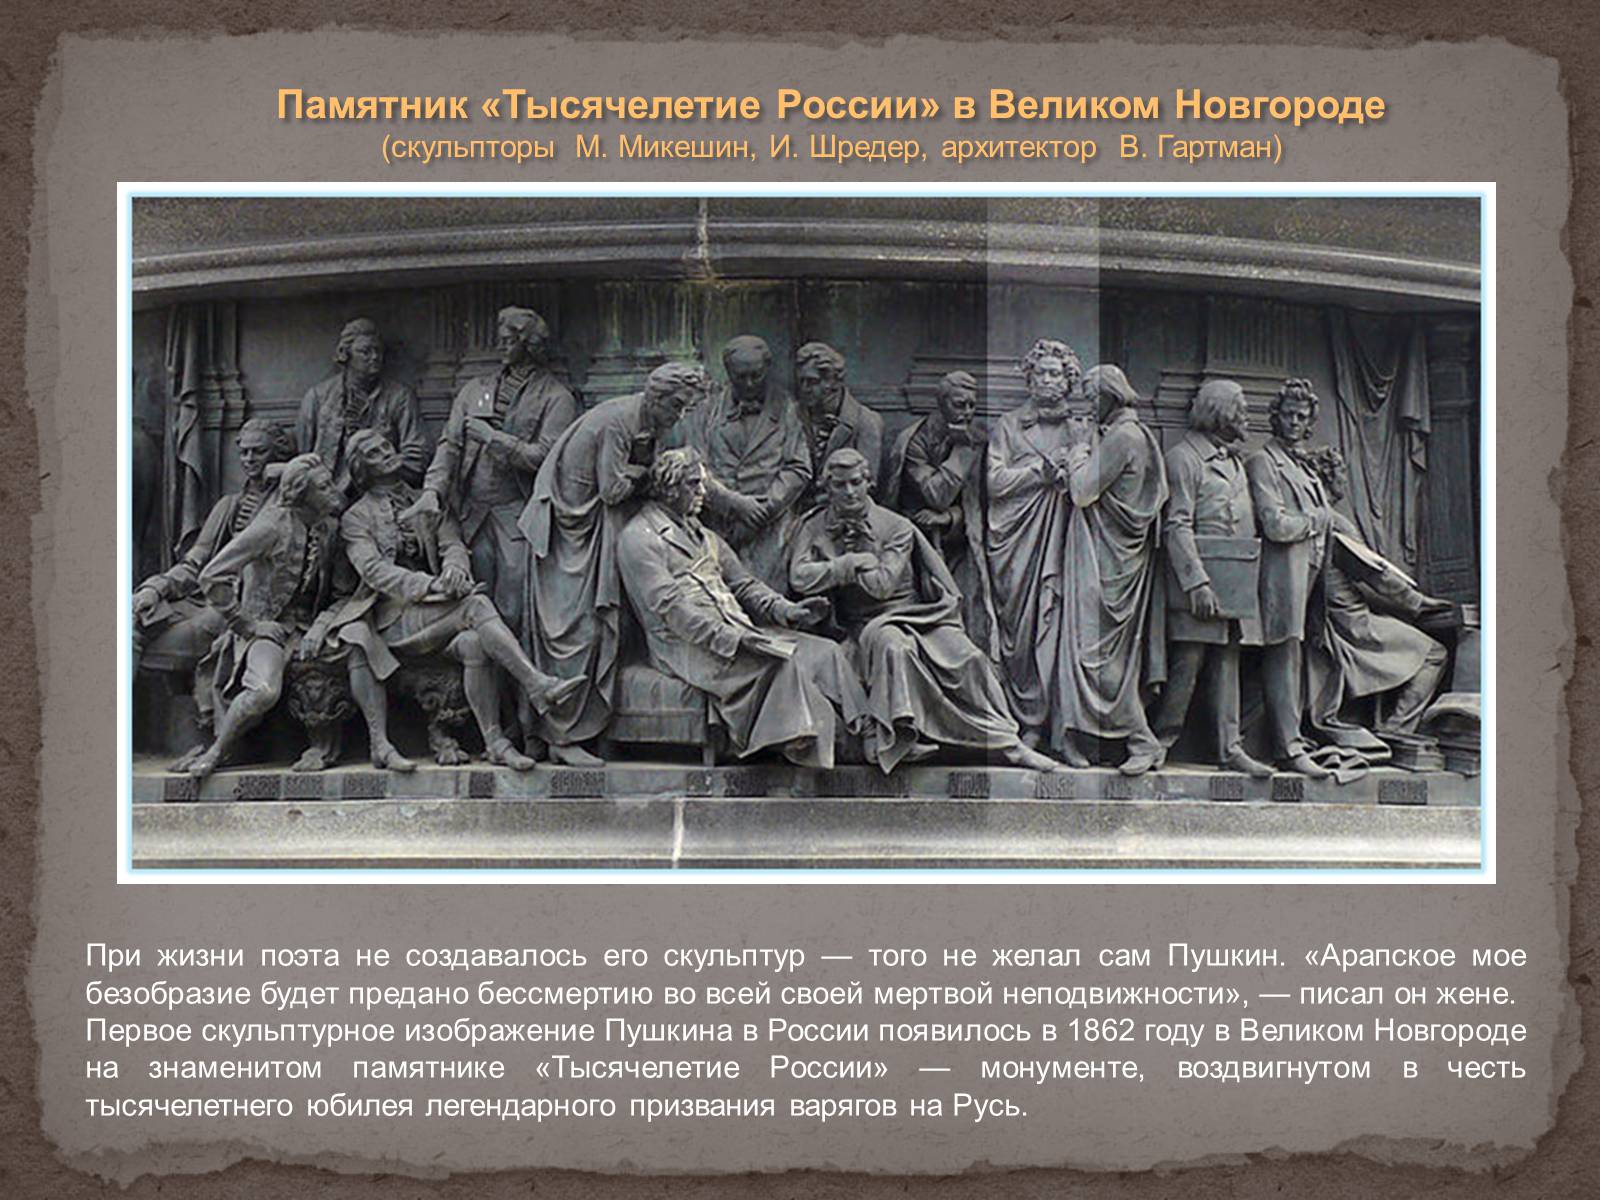 Памятник тысячелетия Руси в Великом Новгороде описание